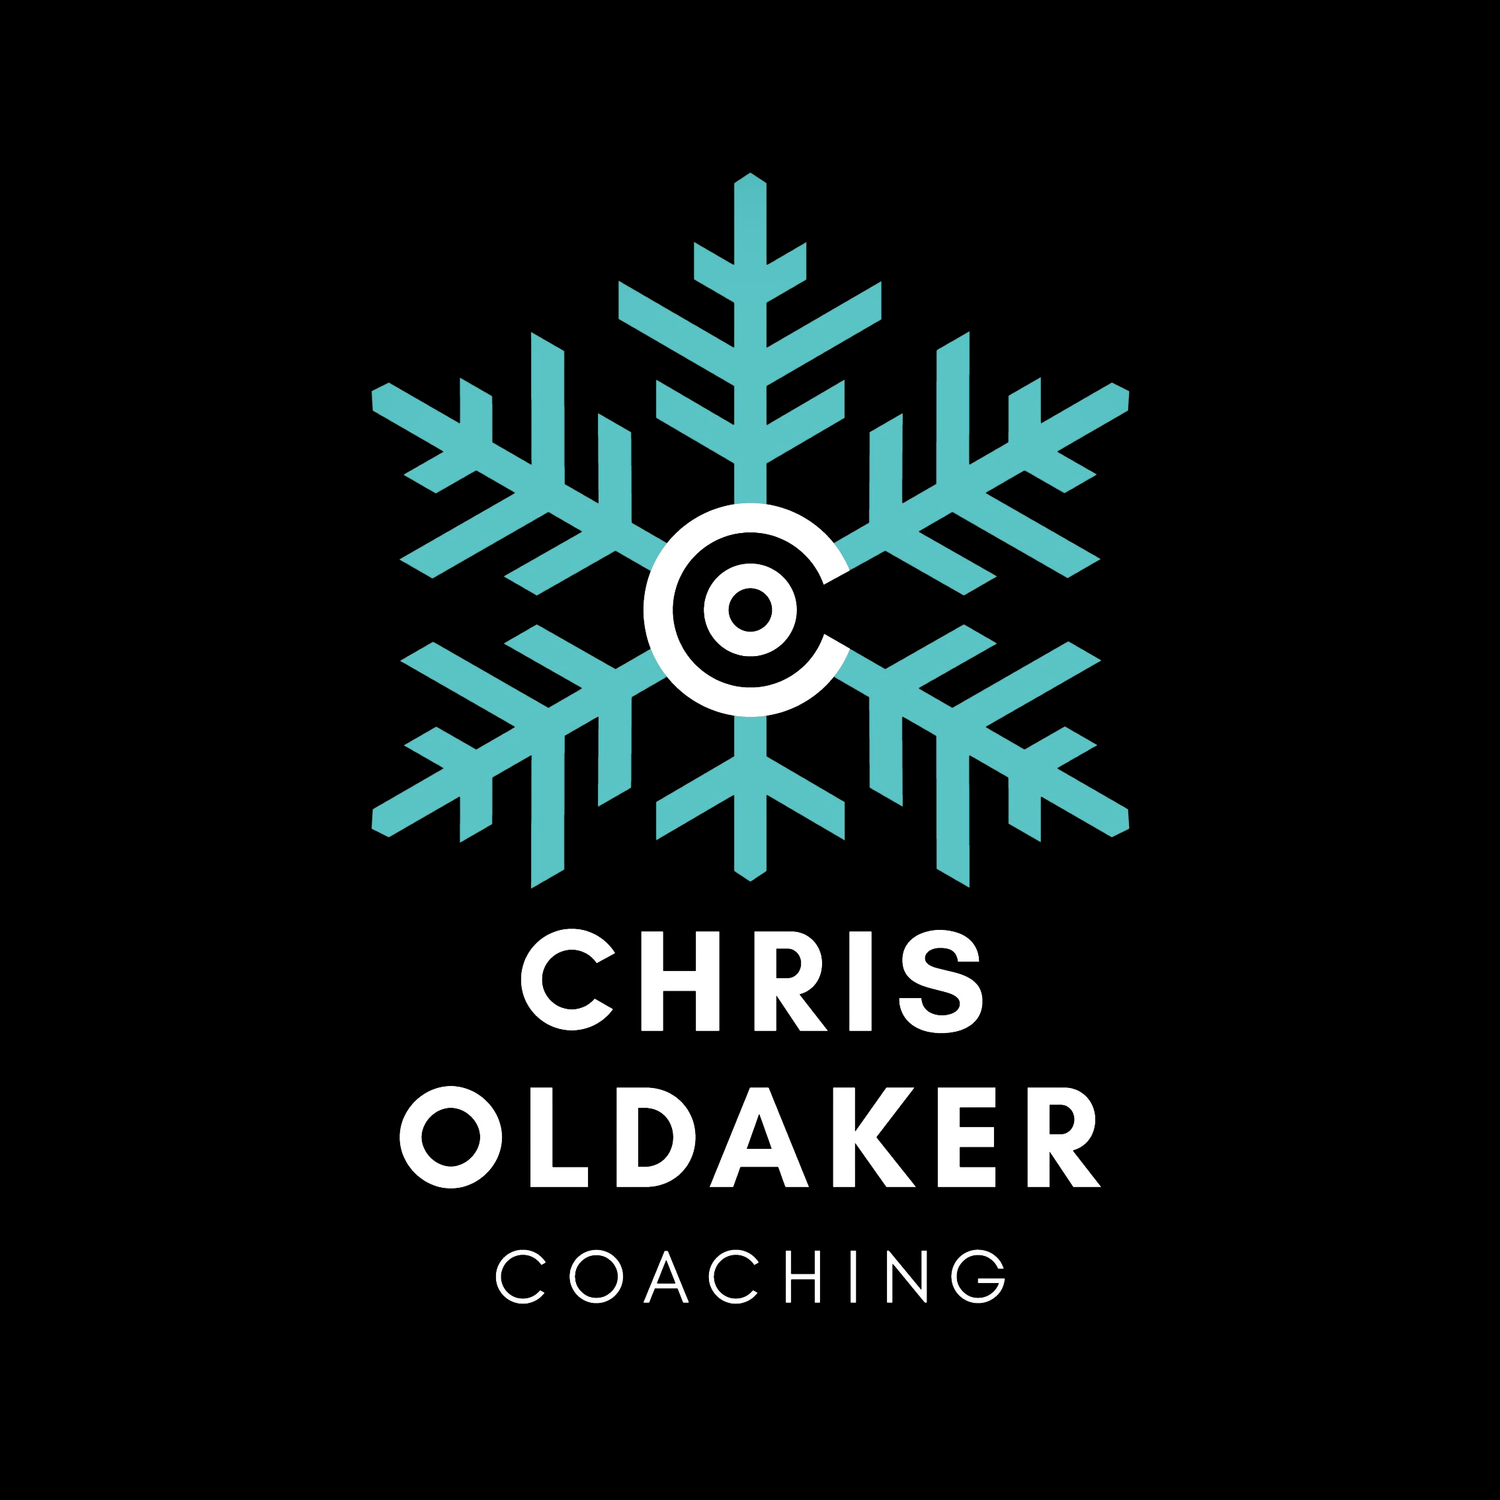 Chris Oldaker Coaching